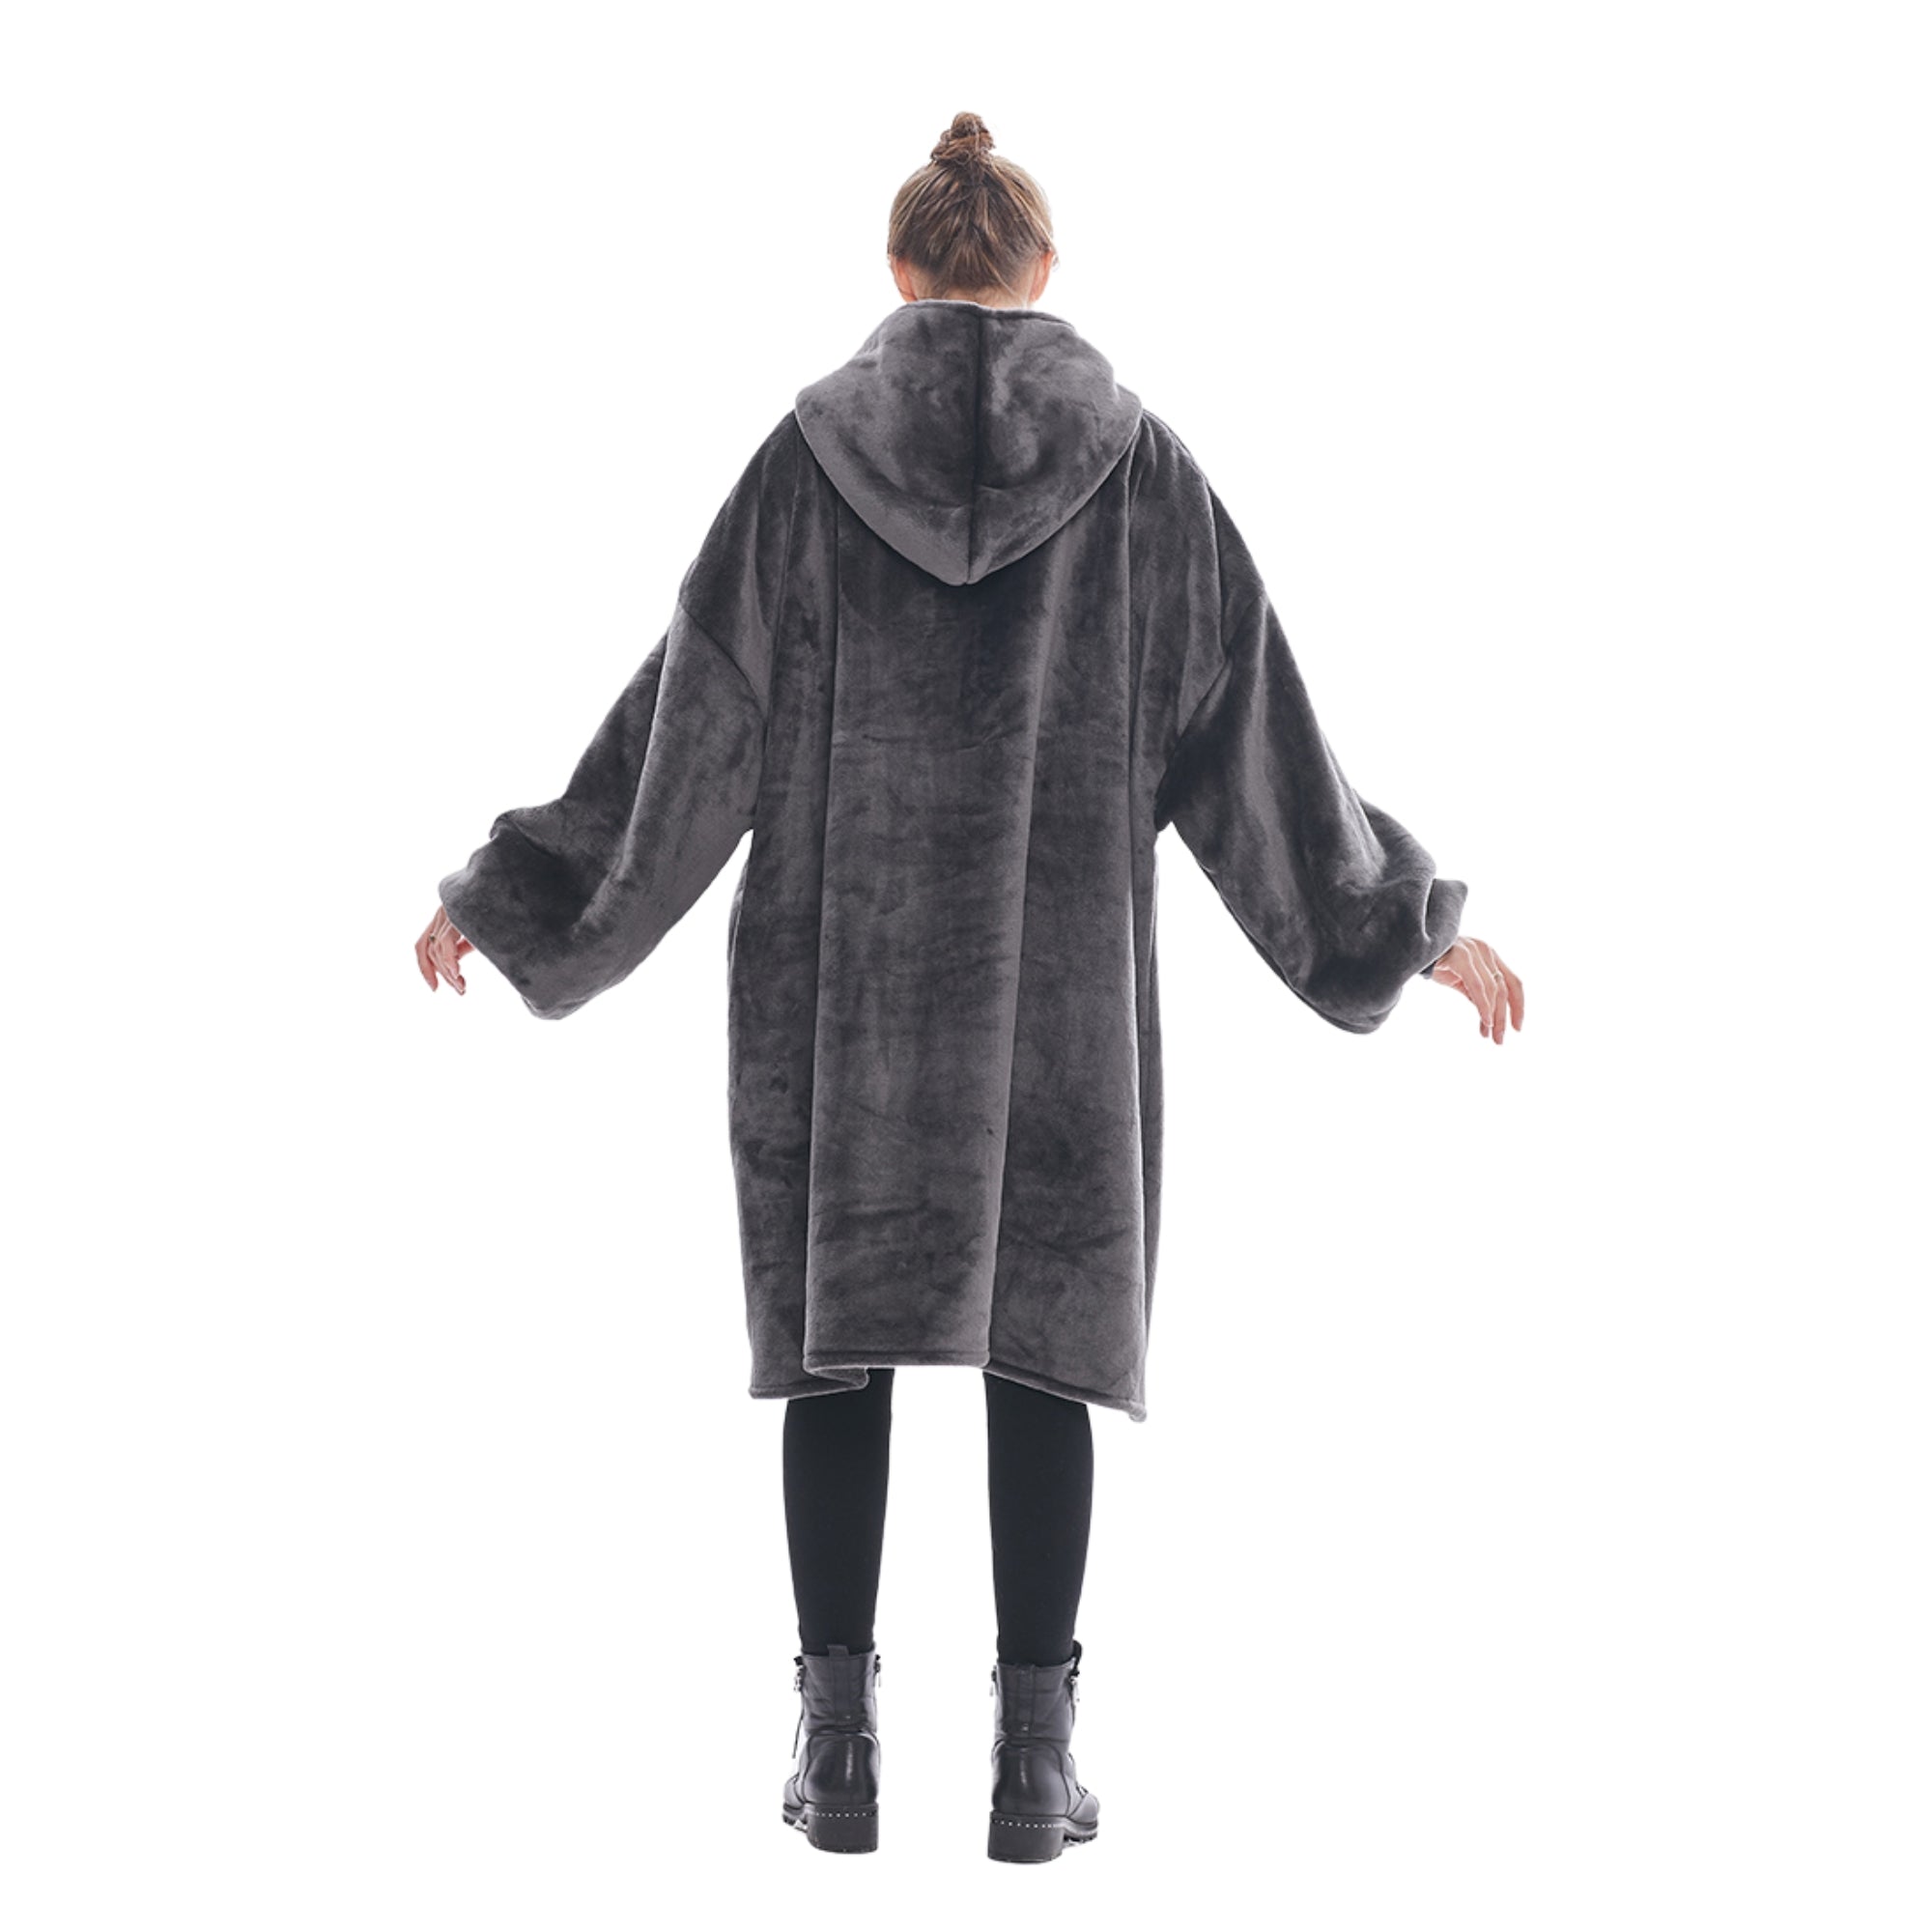 Pull Plaid à capuche gris Anthracite Femme Sweat Polaire Géant Oversized Hoodie® capuche géante 